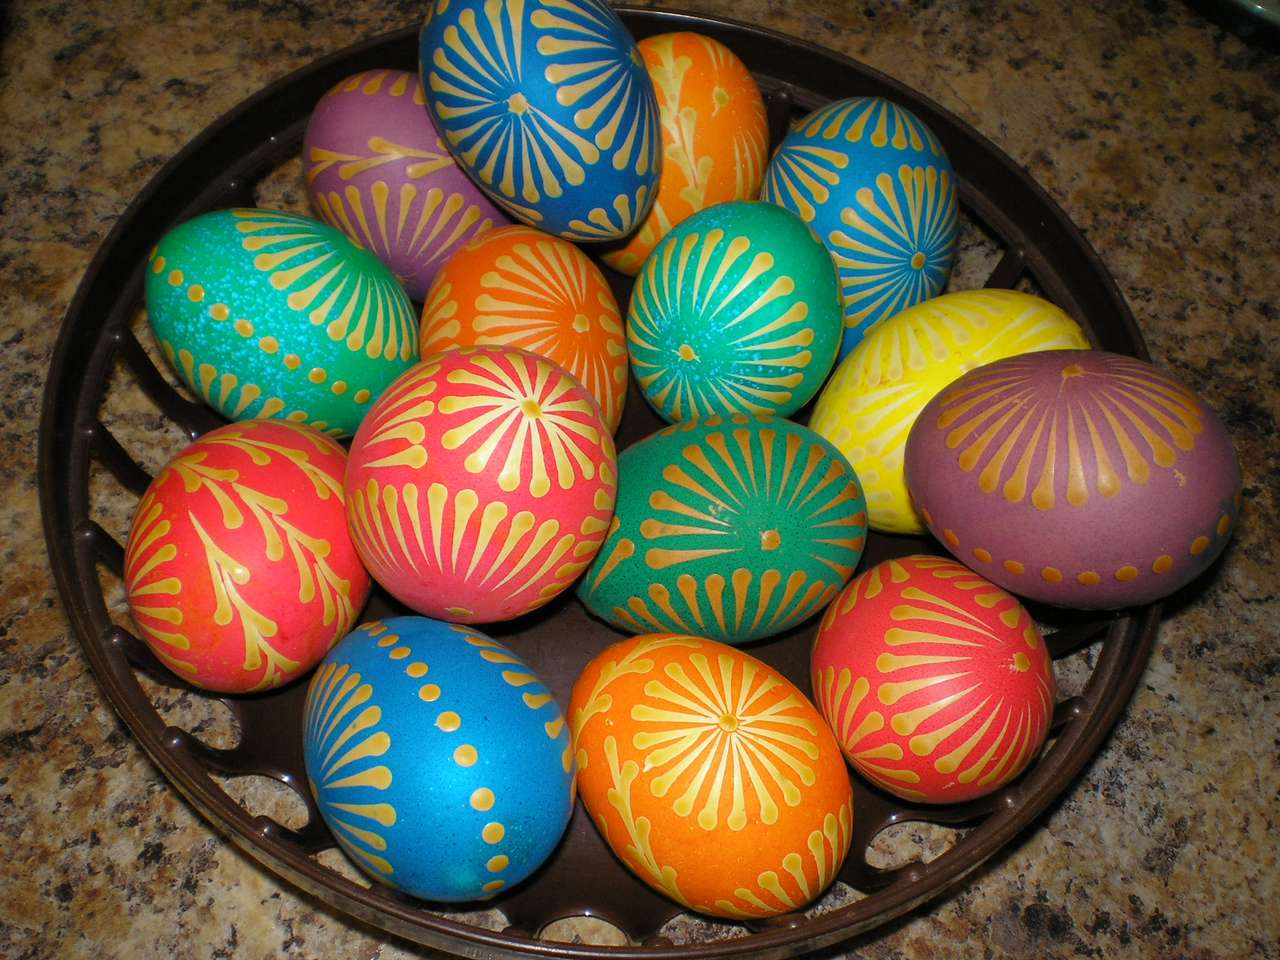 Coloridos huevos de pascua rompecabezas en línea